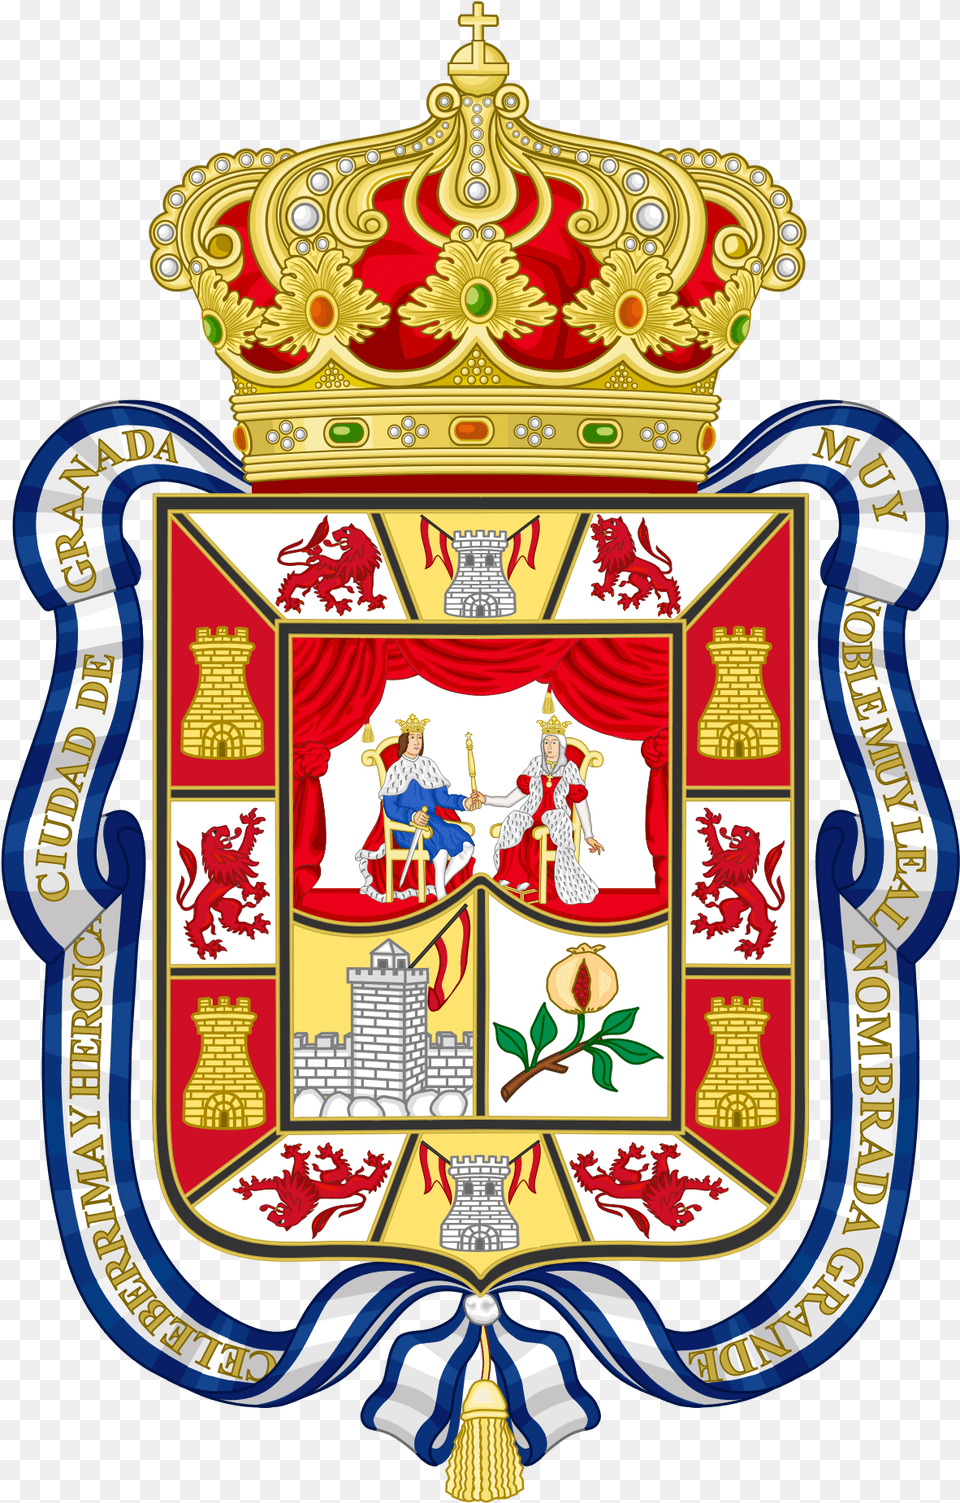 Bandera Y Escudo De Granada, Person, Armor, Emblem, Symbol Free Png